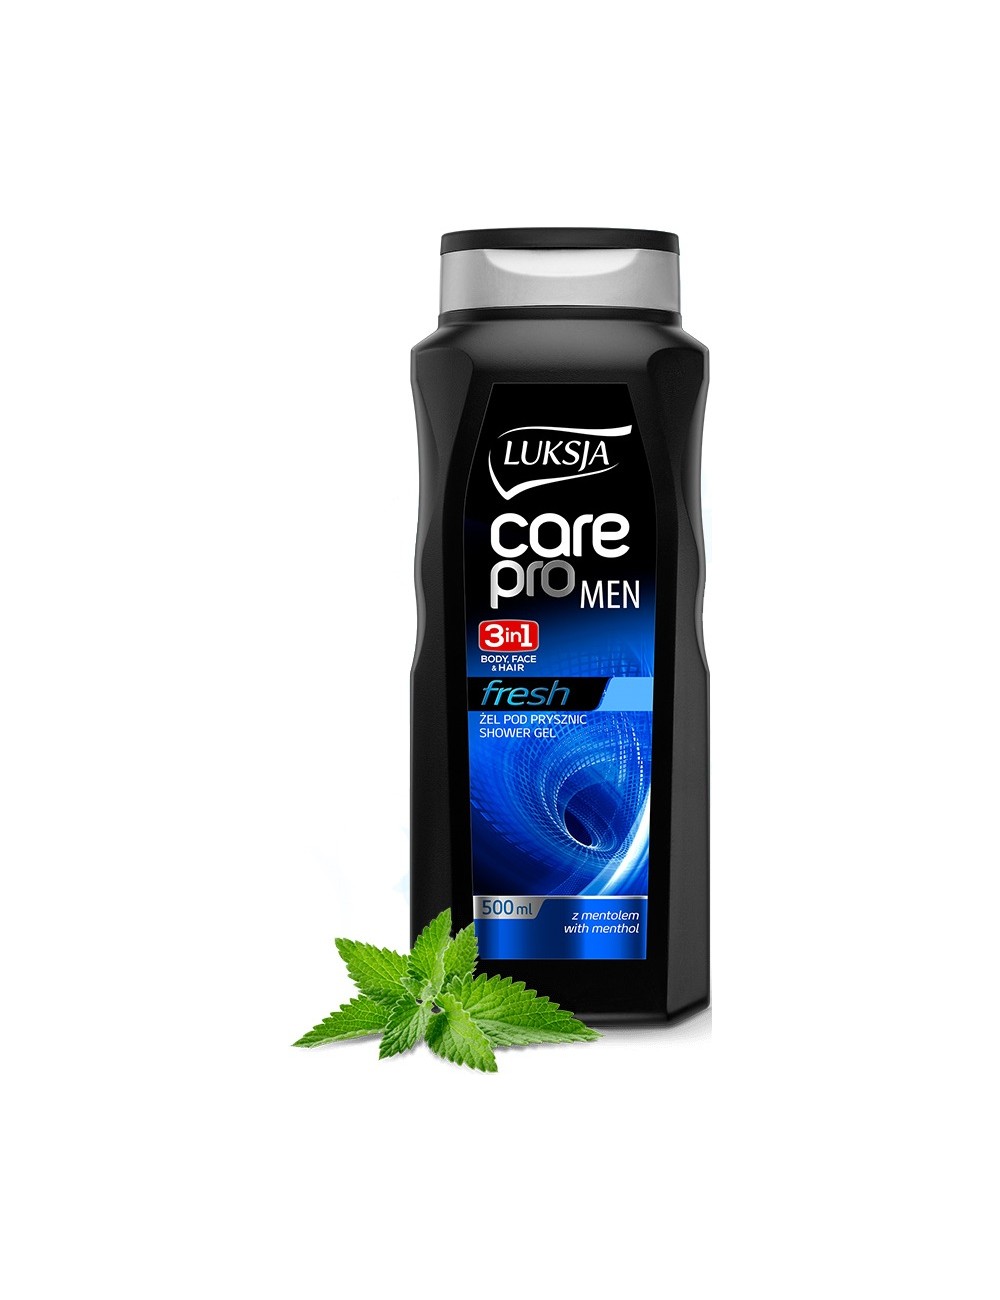 Luksja Care Pro Men Fresh Żel pod Prysznic dla Mężczyzn do Ciała i Włosów 2w1 z Mentolem 500 ml